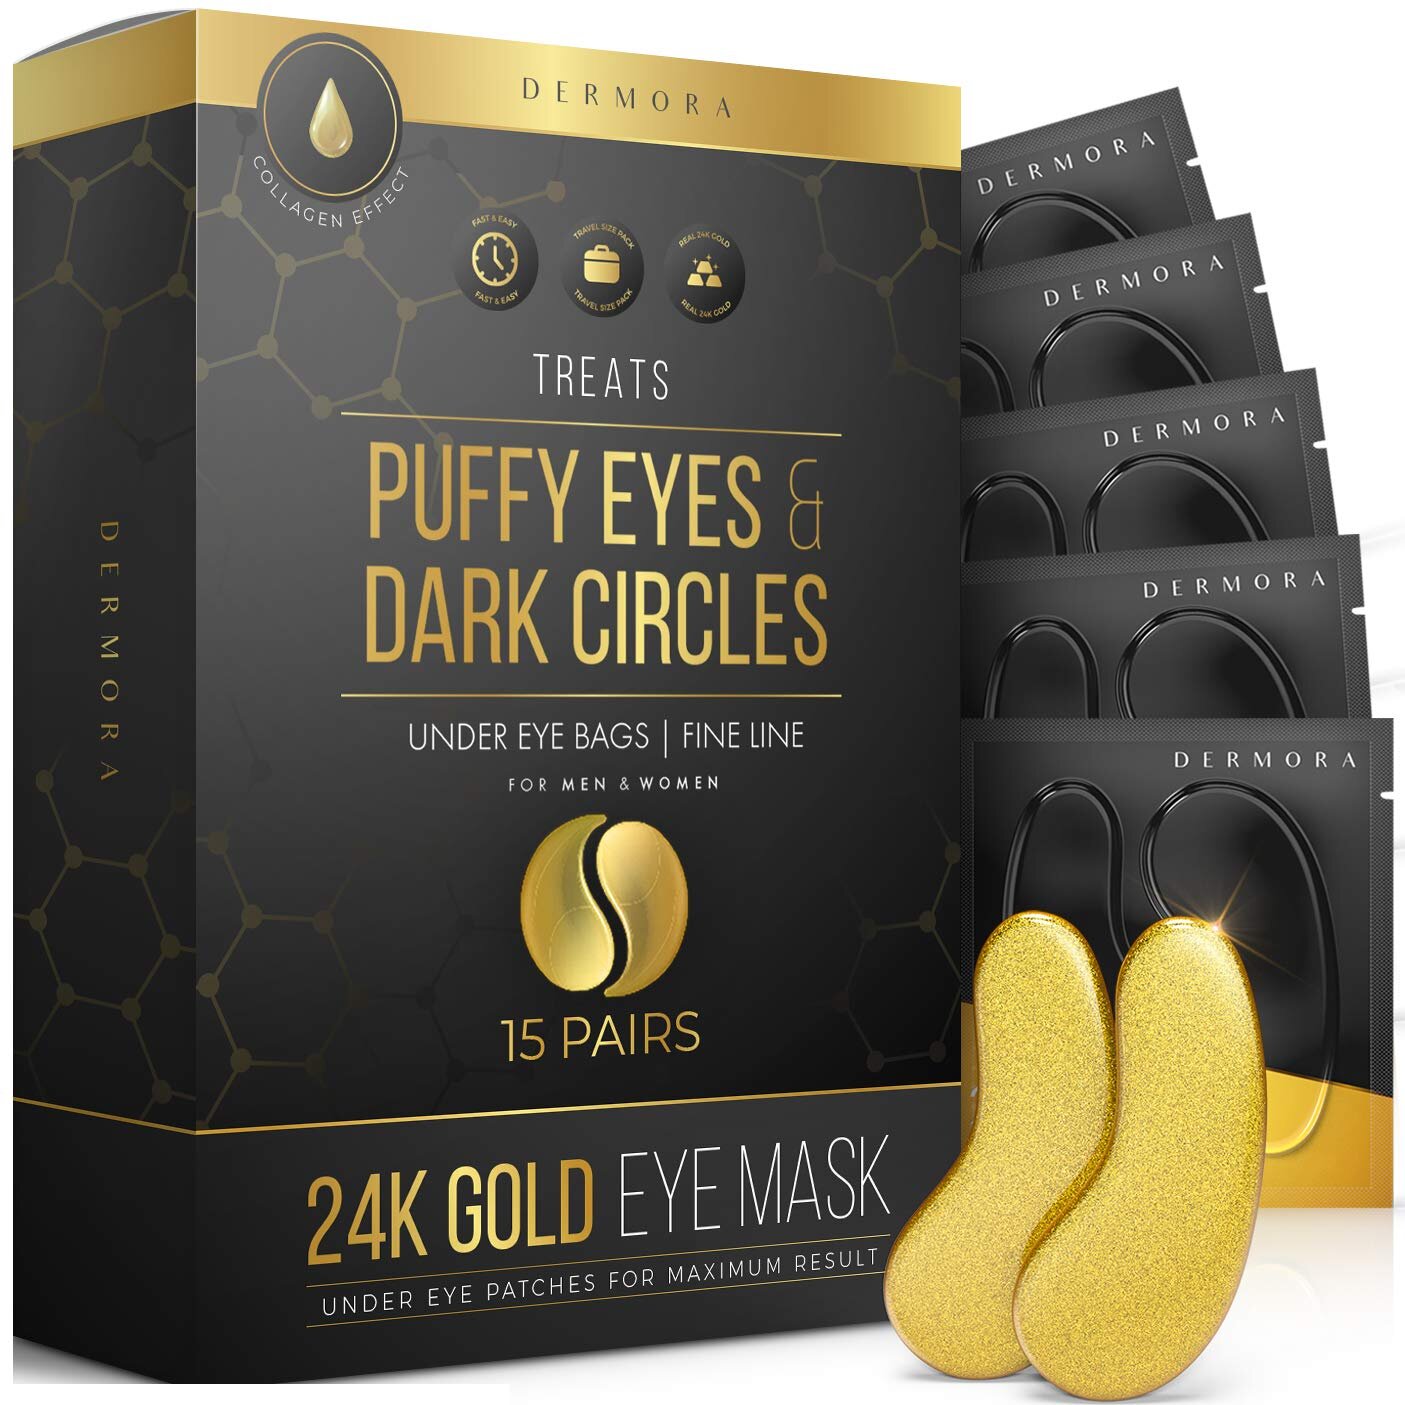 Puffy Eyes and Dark Circles Treatments